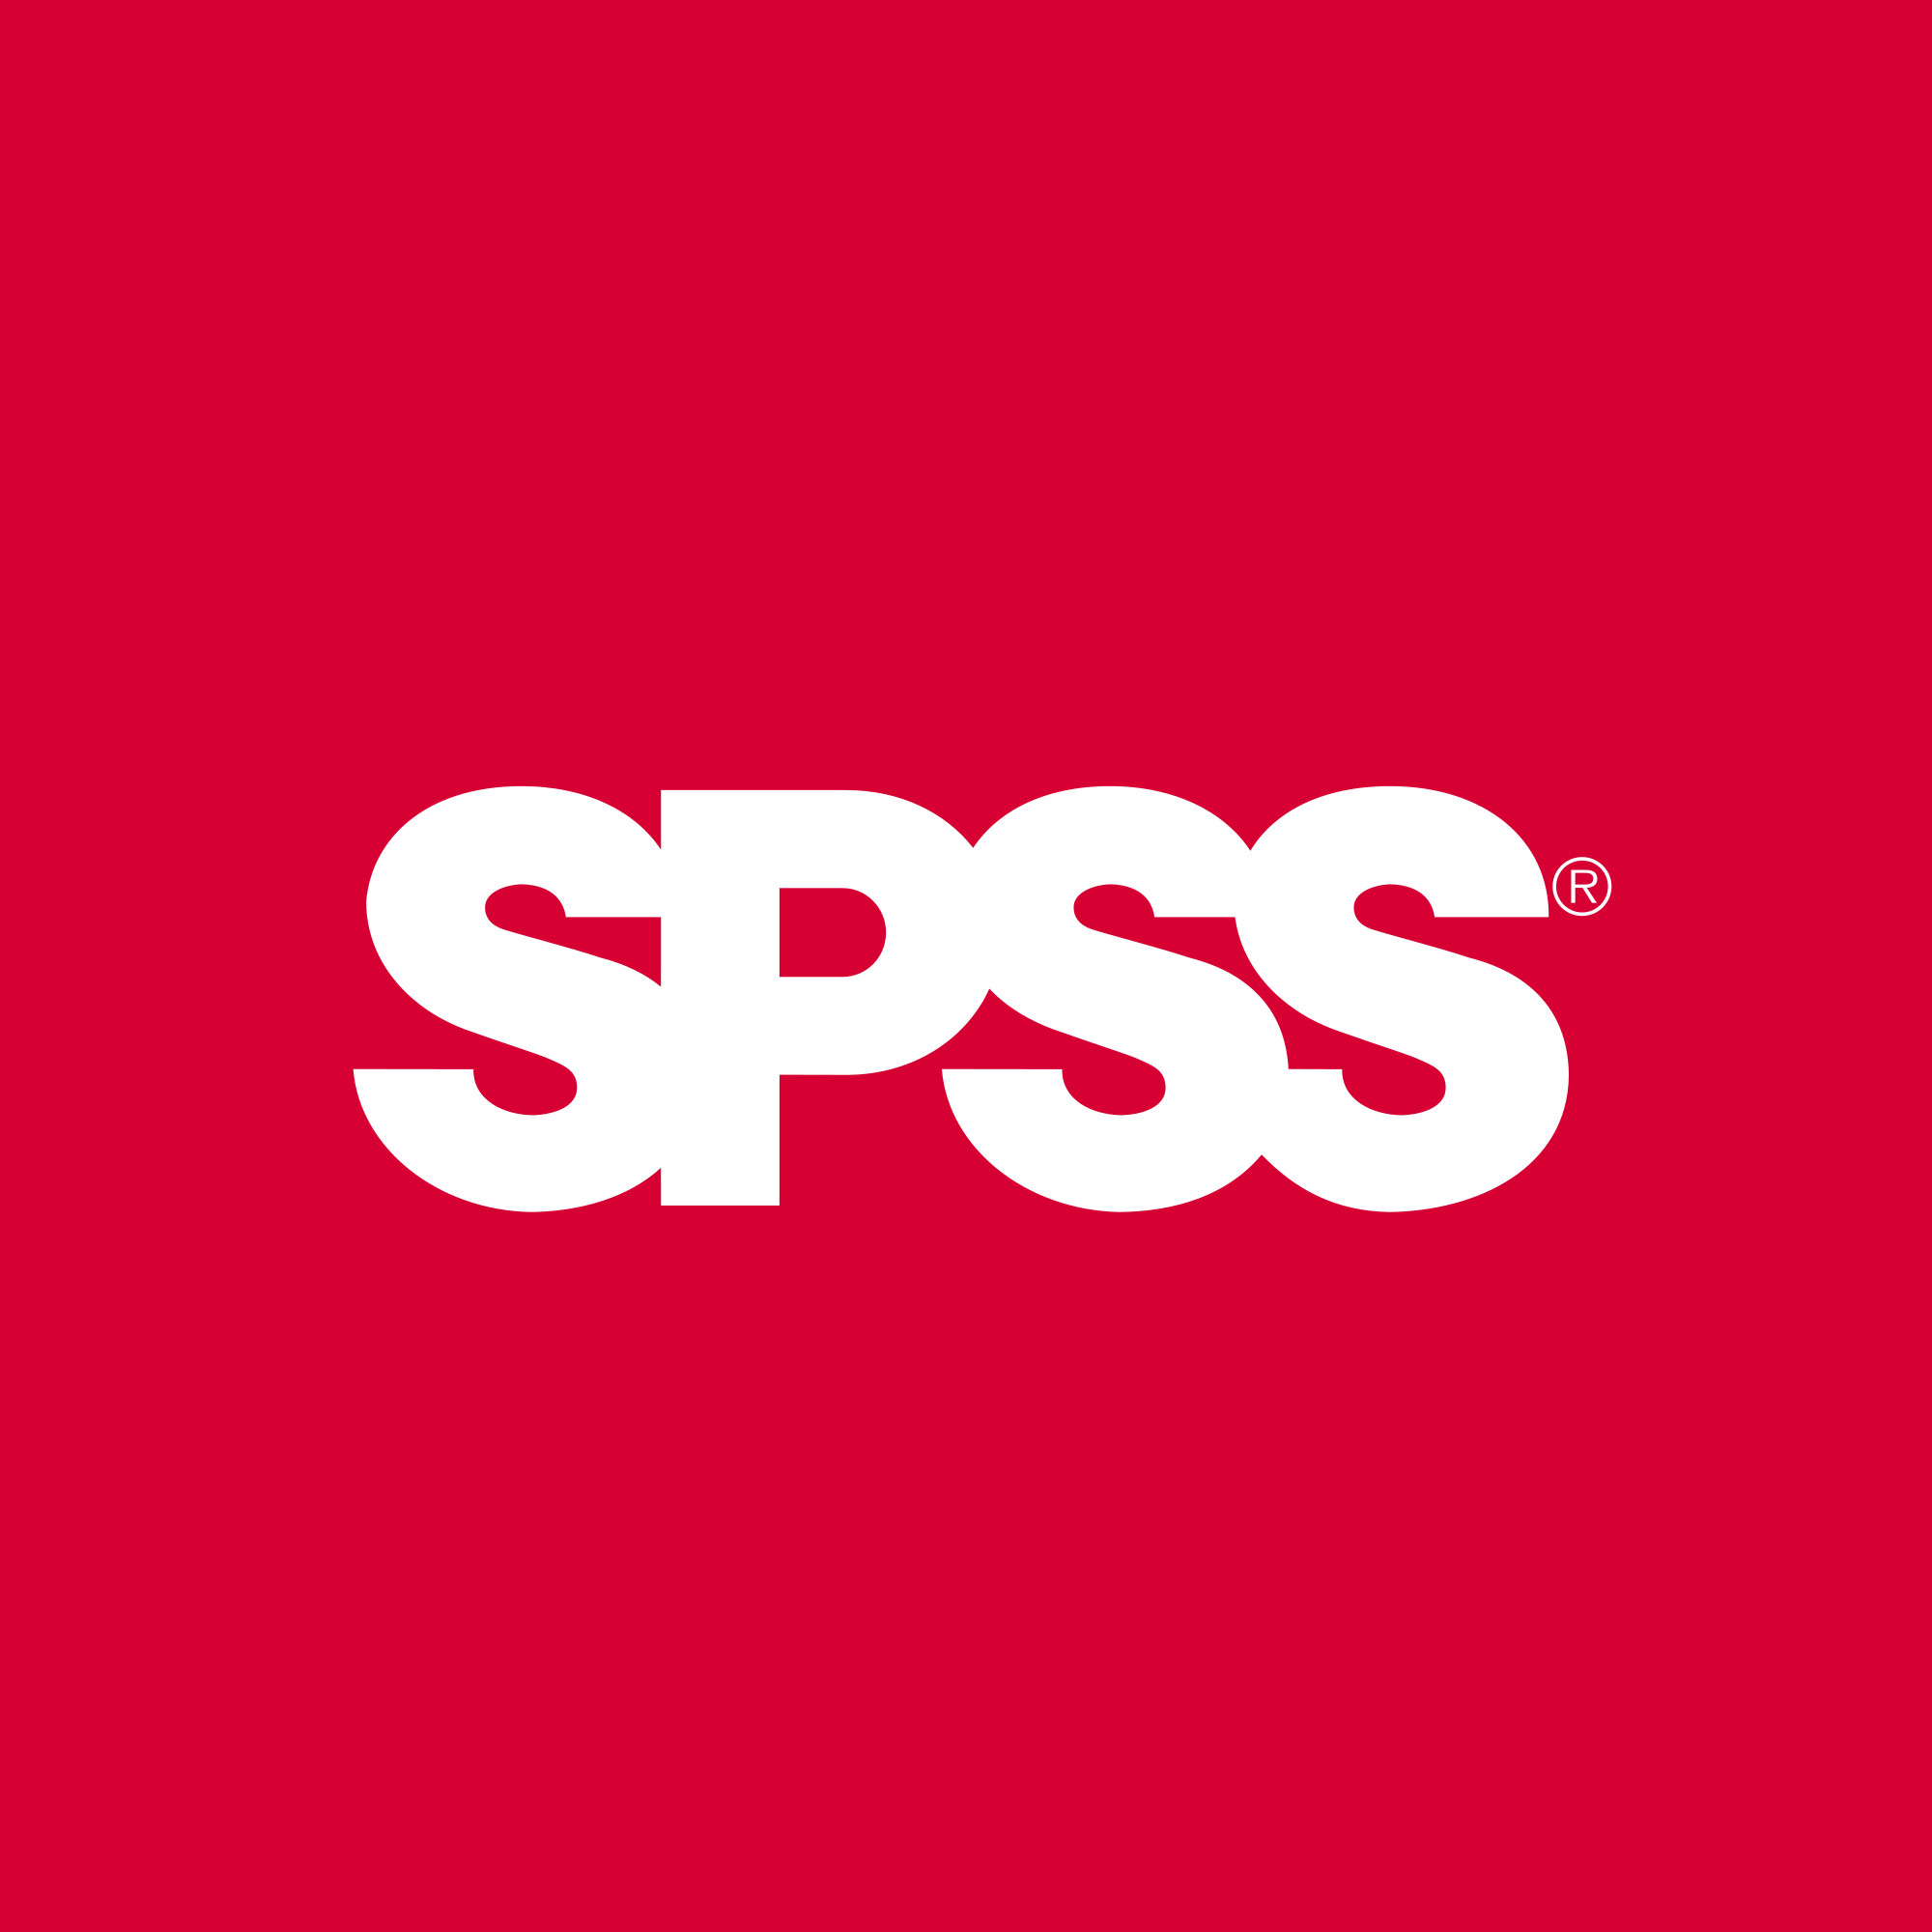 SPSS Logo - SPSS